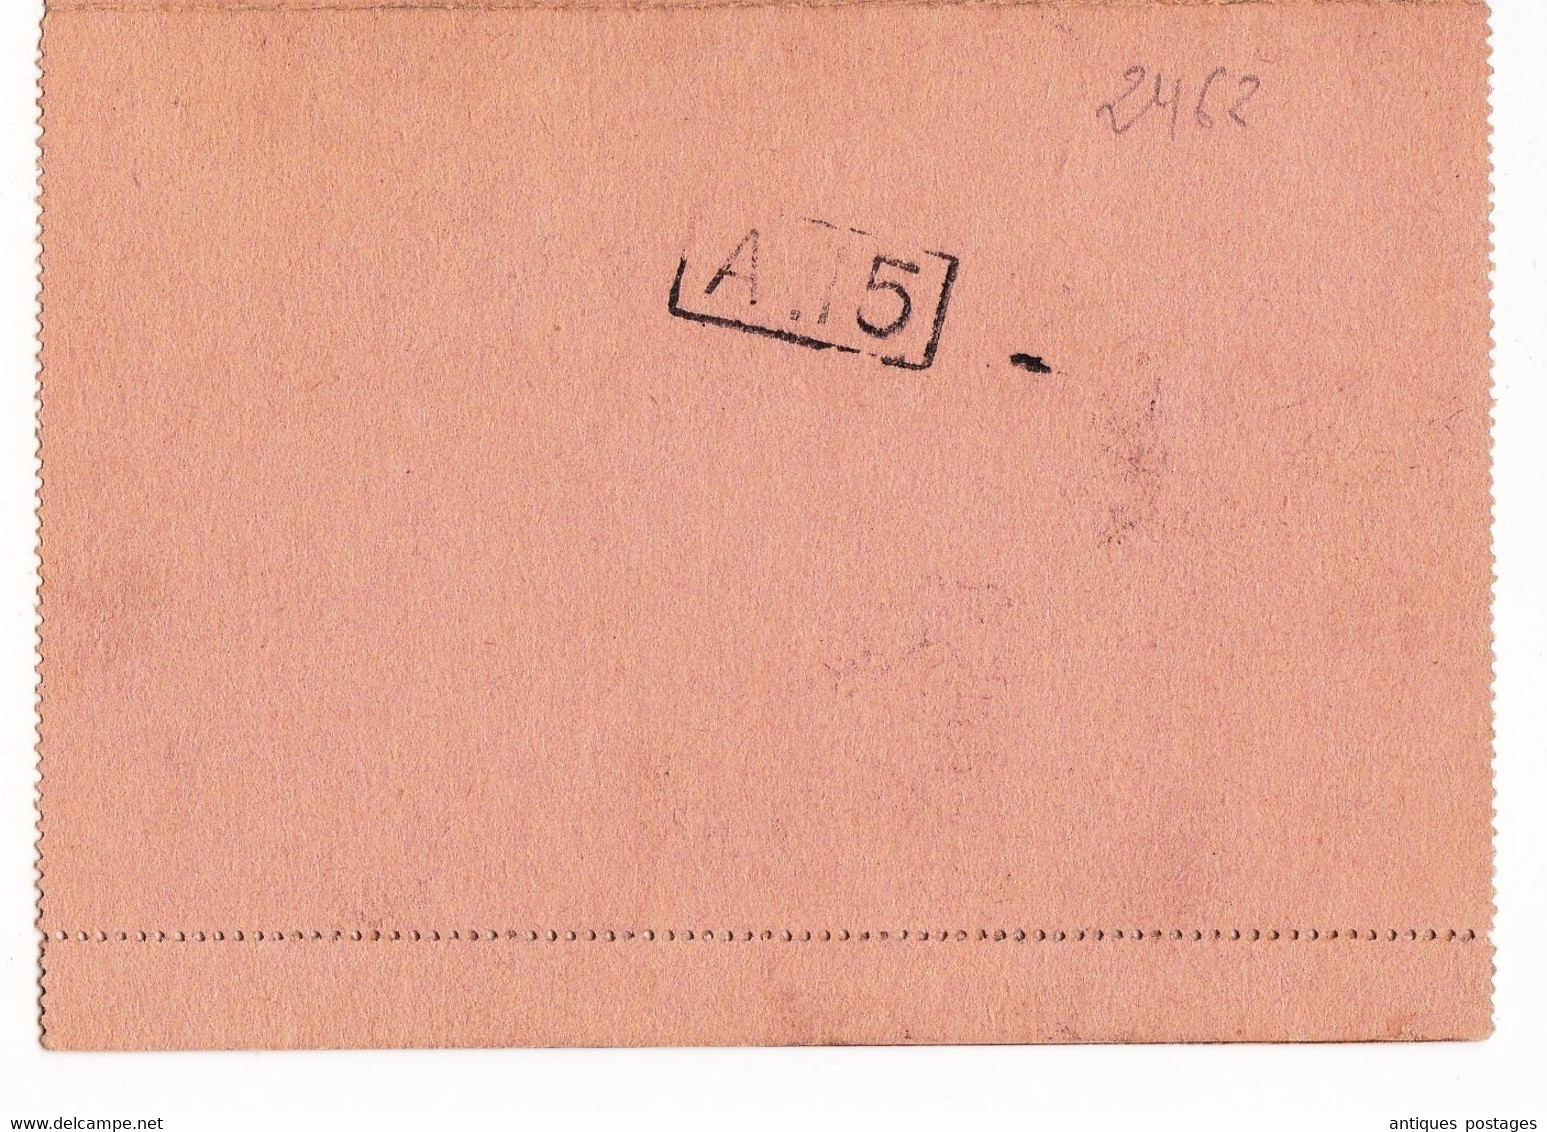 Entier Postal1898 Privas Ardèche Type Sage Rotterdam Hollande Pays Bas Philatélie Timbre - Cartes-lettres